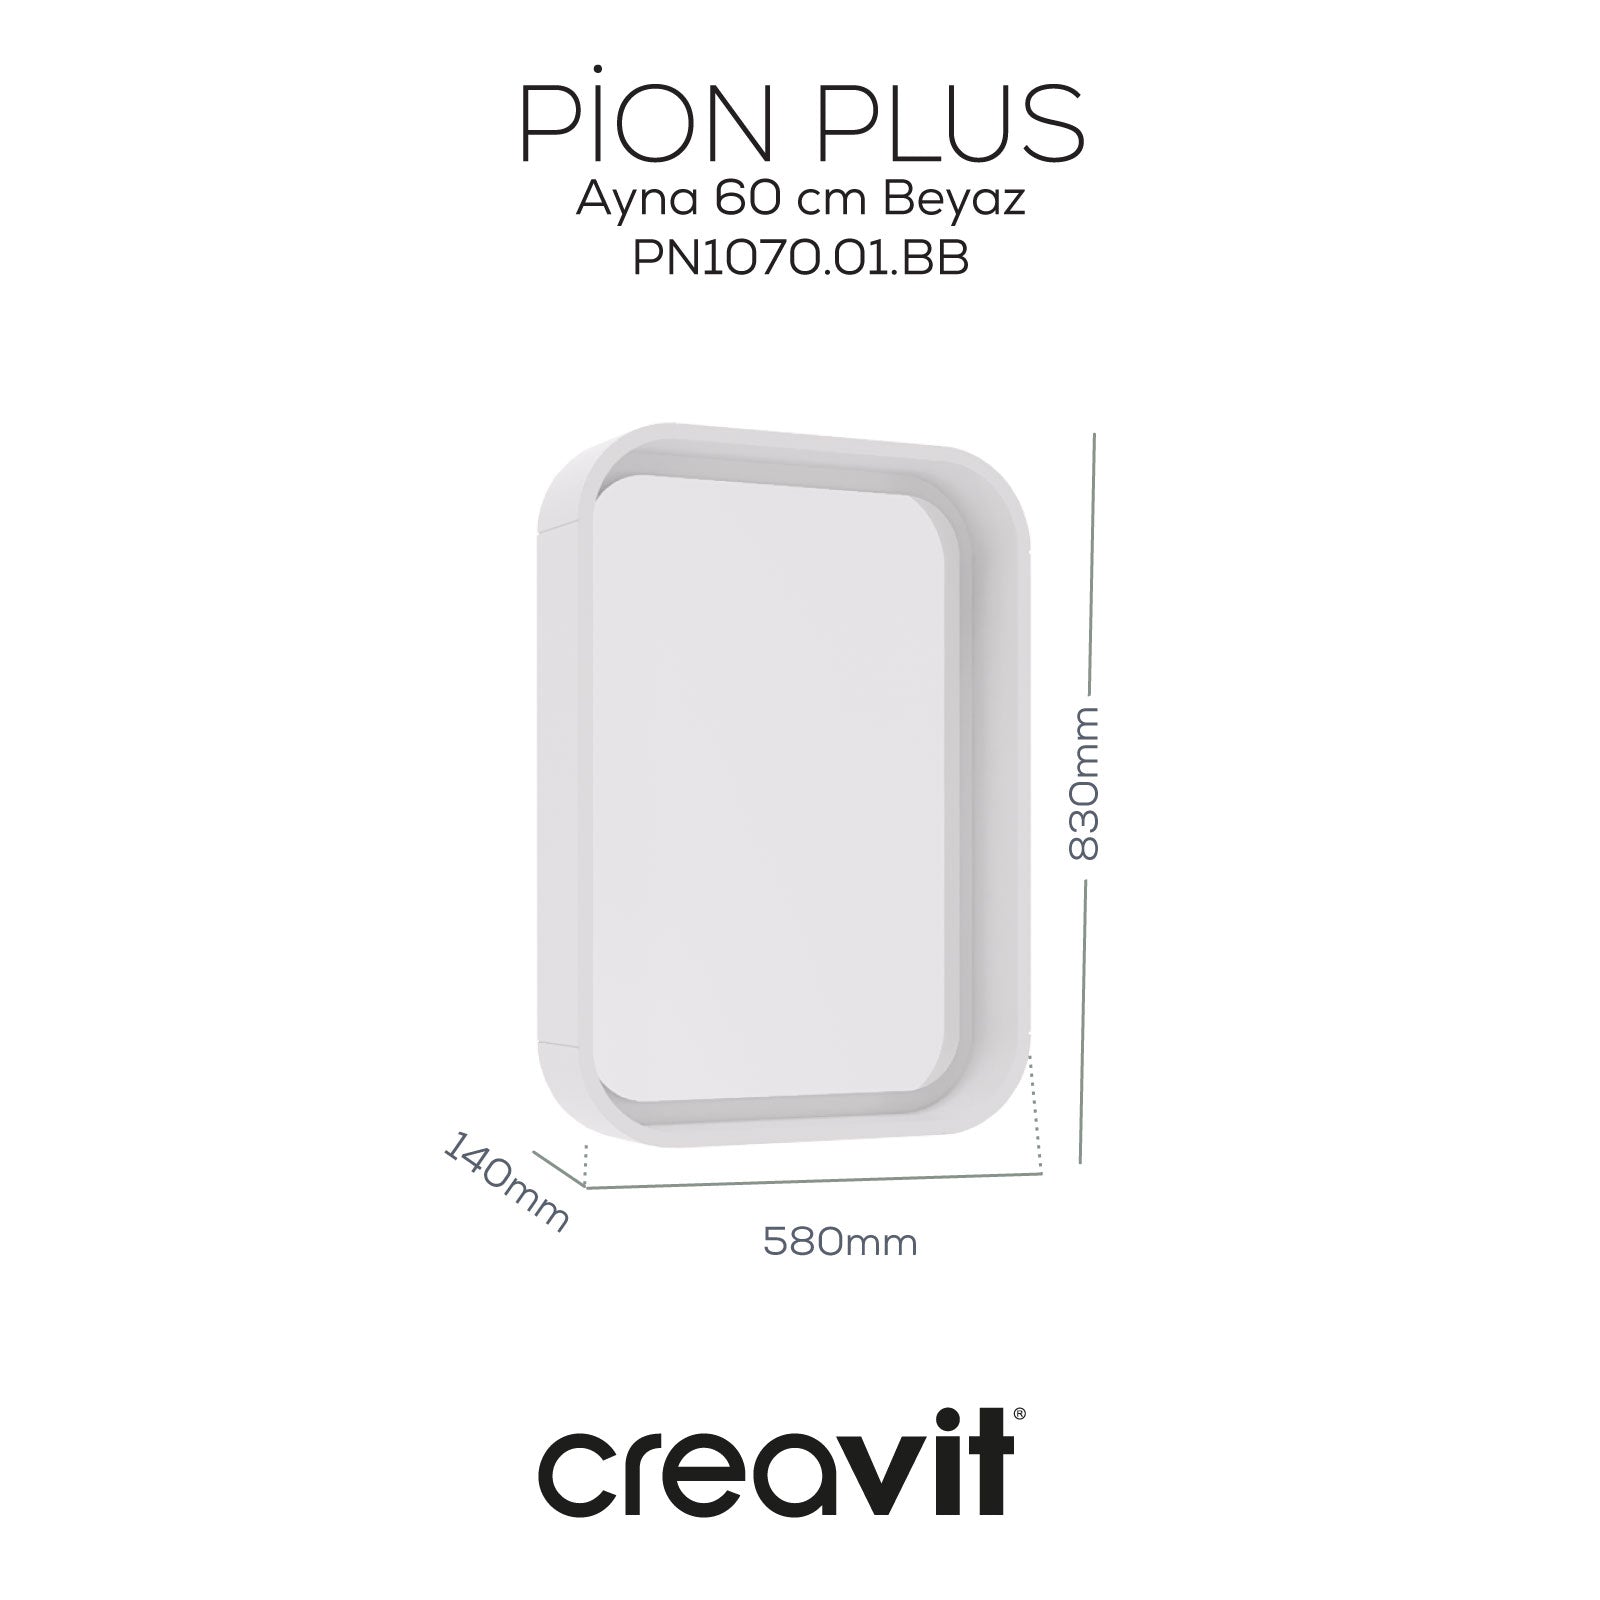 Pion Plus Ayna 60 cm Beyaz - Creavit | Banyo Bu Tarafta